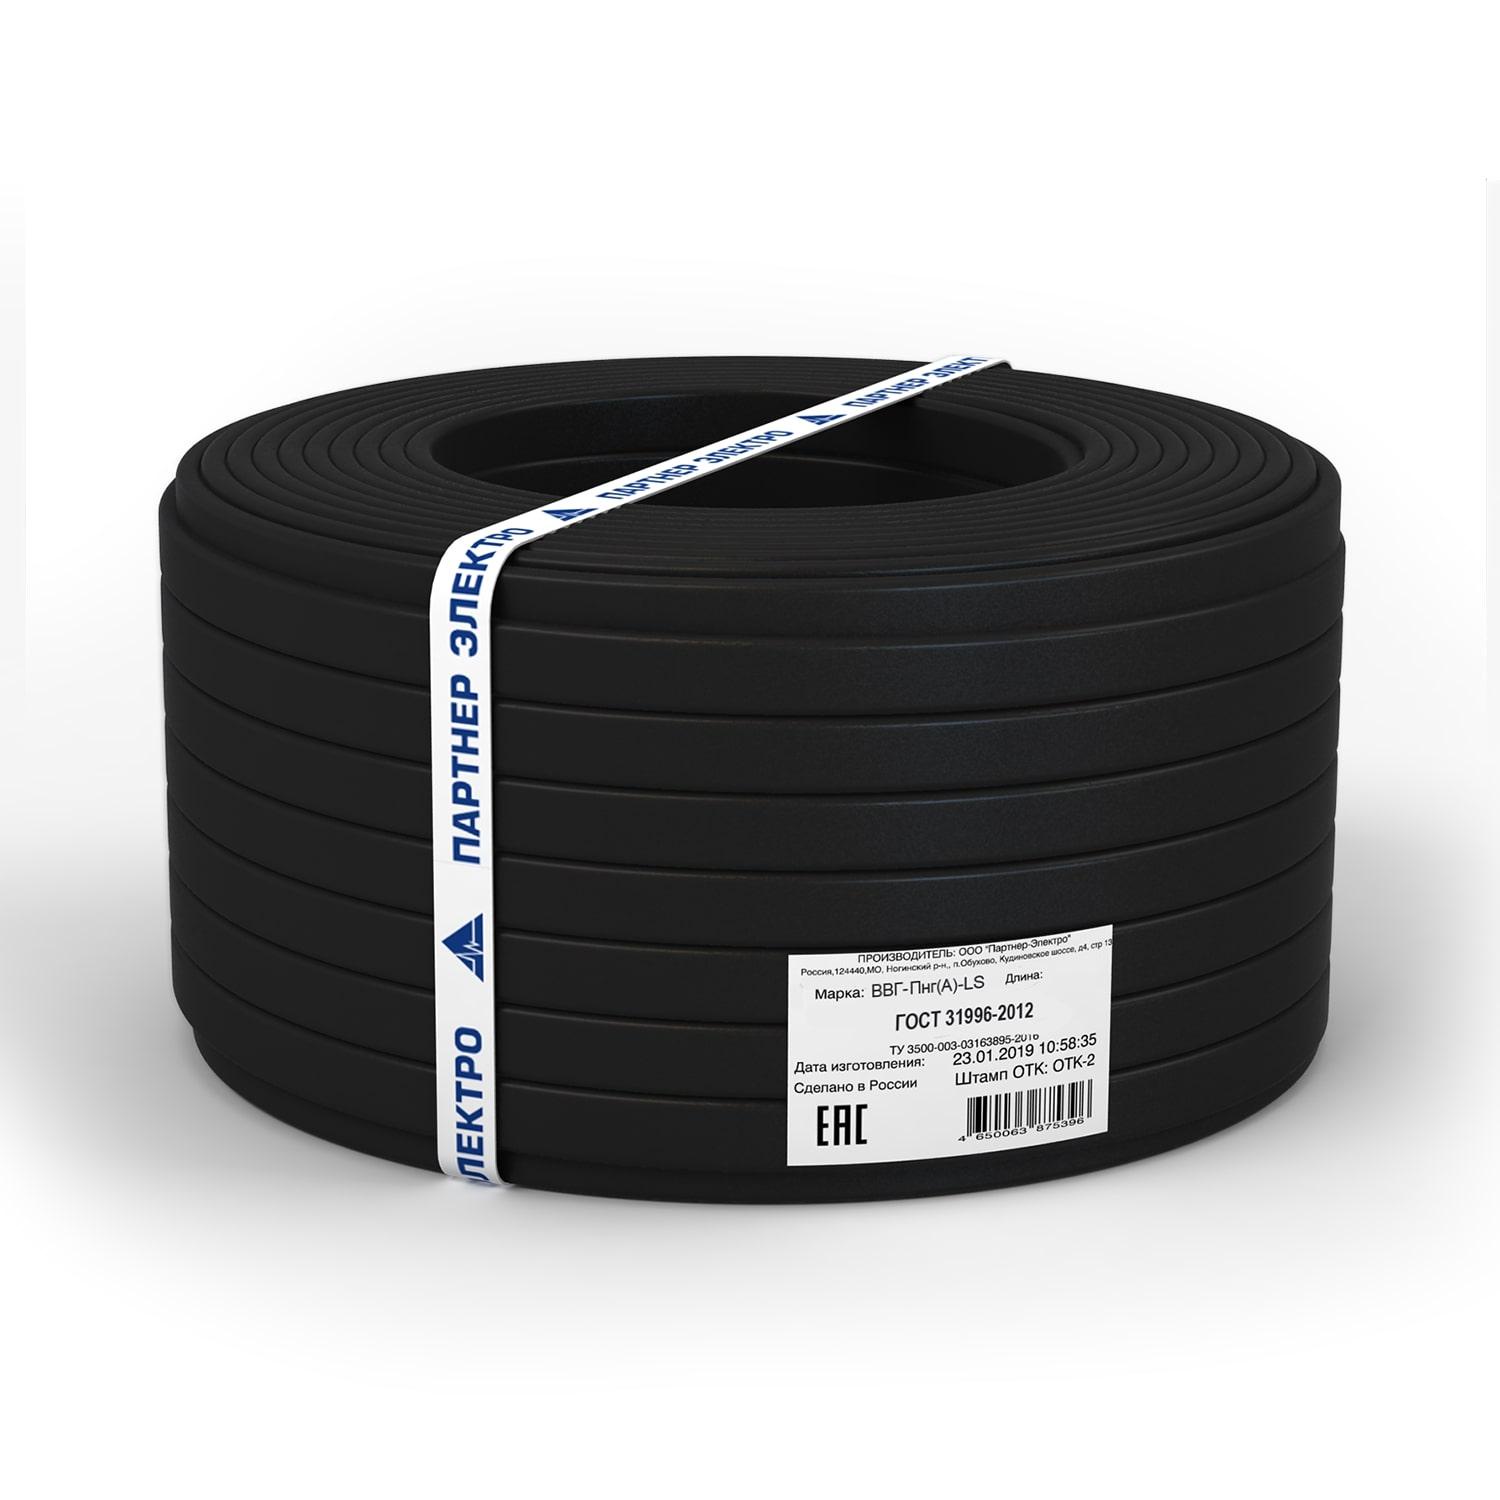 фото Силовой кабель Партнер-Электро Кабель ВВГ-ПнгГОСТ (А)-LS 3х1,5 ГОСТ (5м), черный